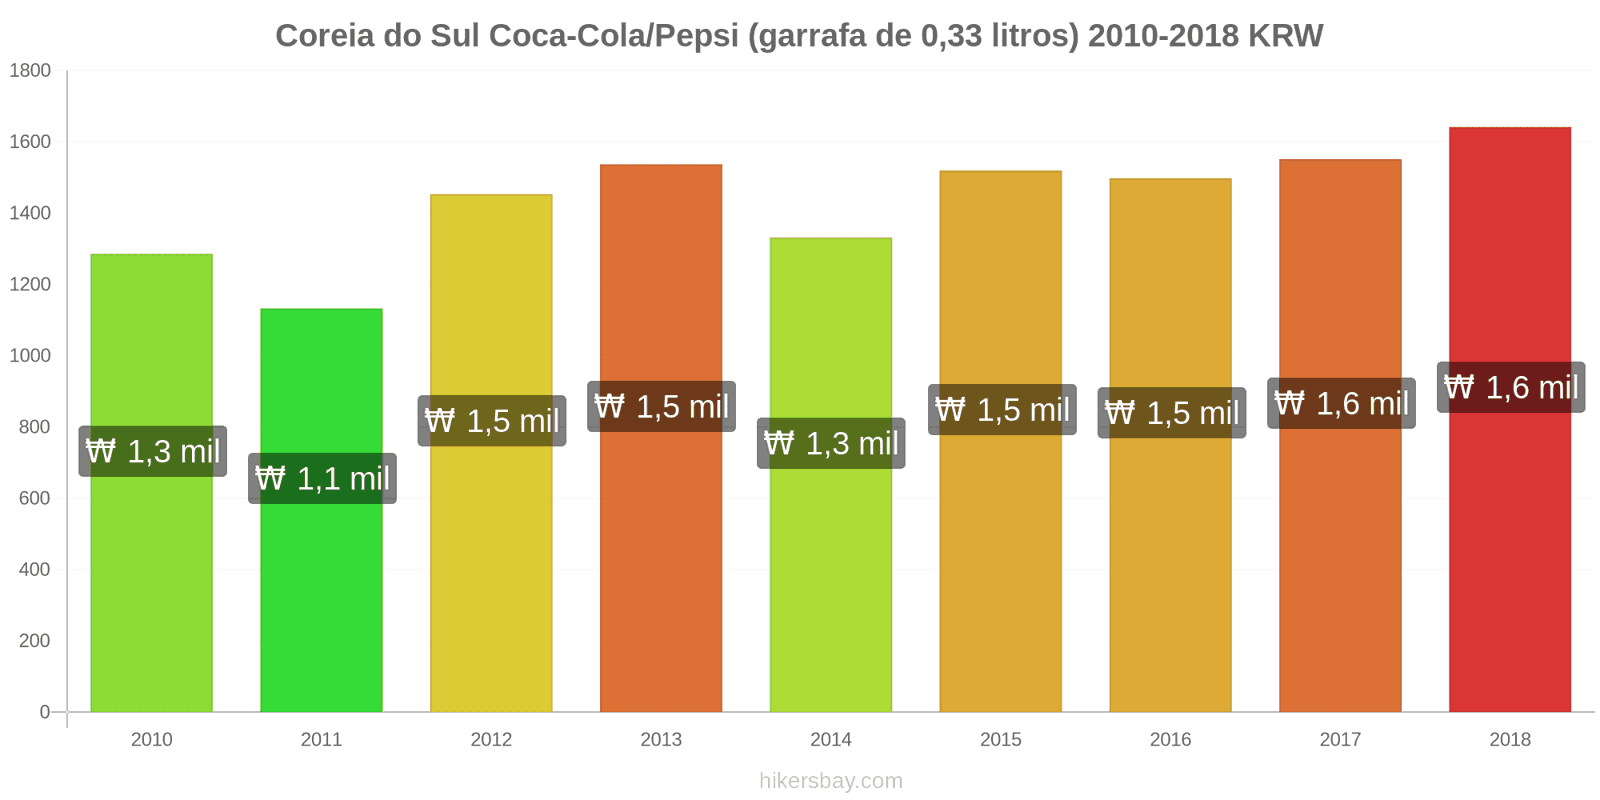 Coreia do Sul mudanças de preços Coca-Cola/Pepsi (garrafa de 0.33 litros) hikersbay.com